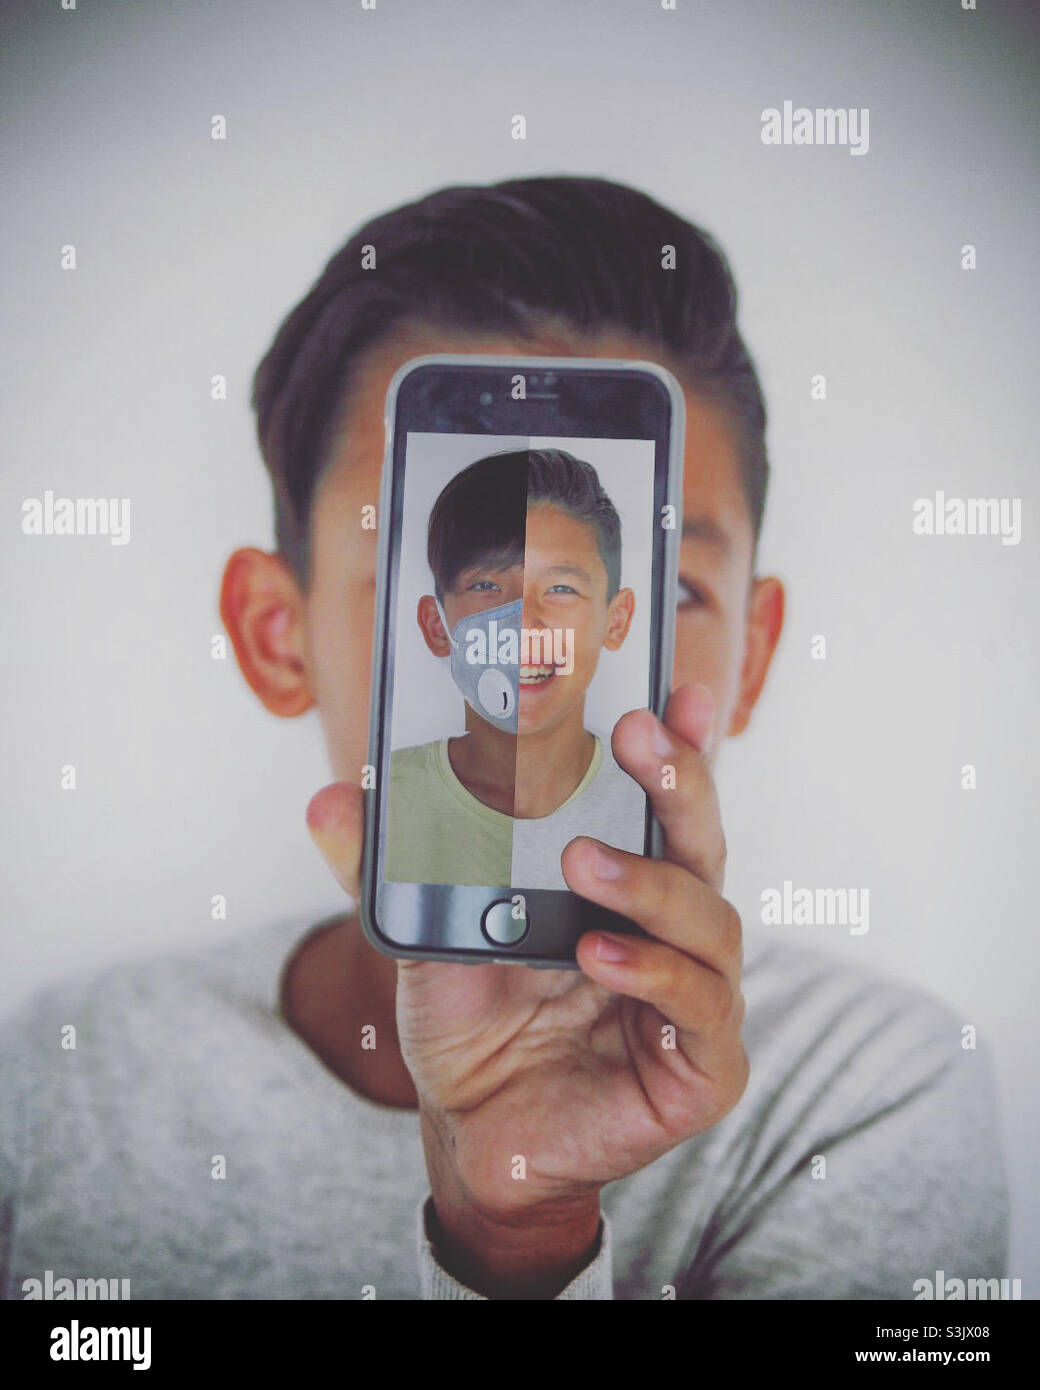 chico joven mostrando la pantalla de su smartohone a la cámara con un retrato si él mismo Foto de stock